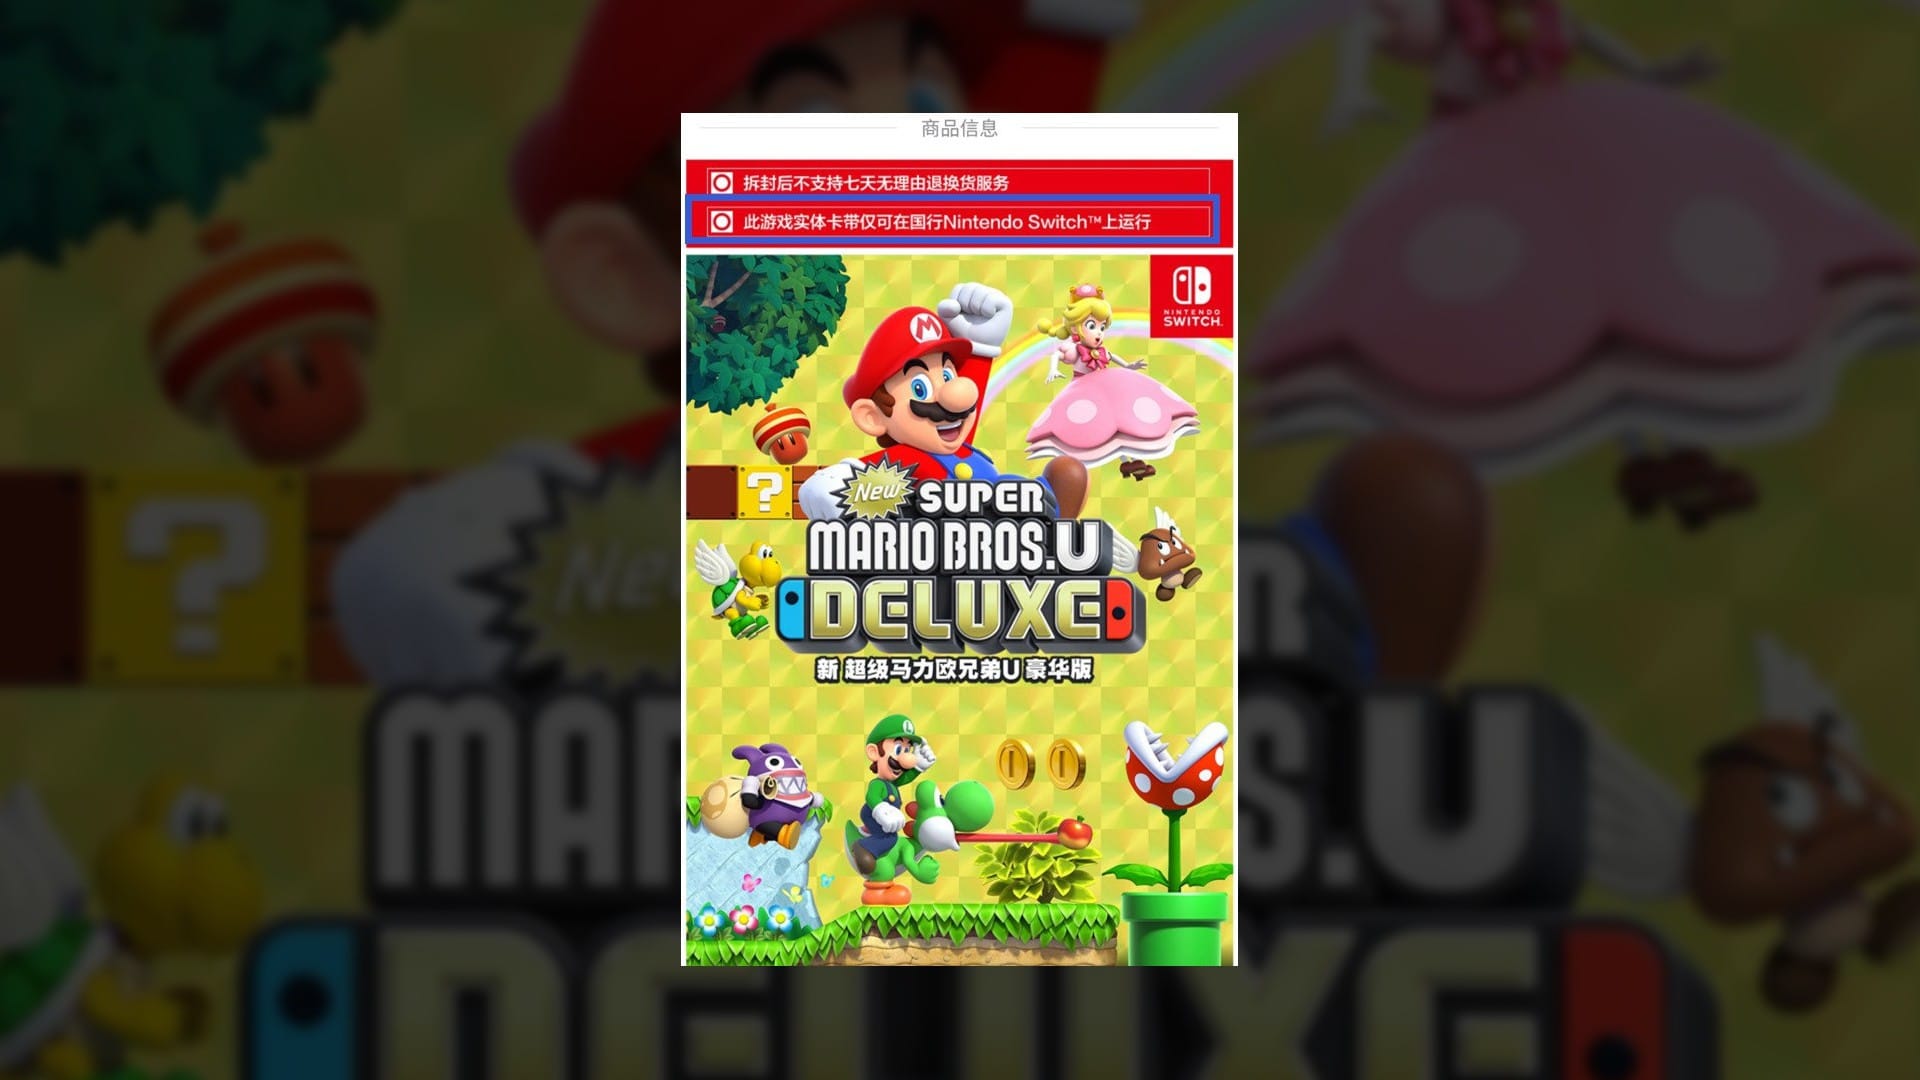 Chinese Nintendo Switch Super Mario